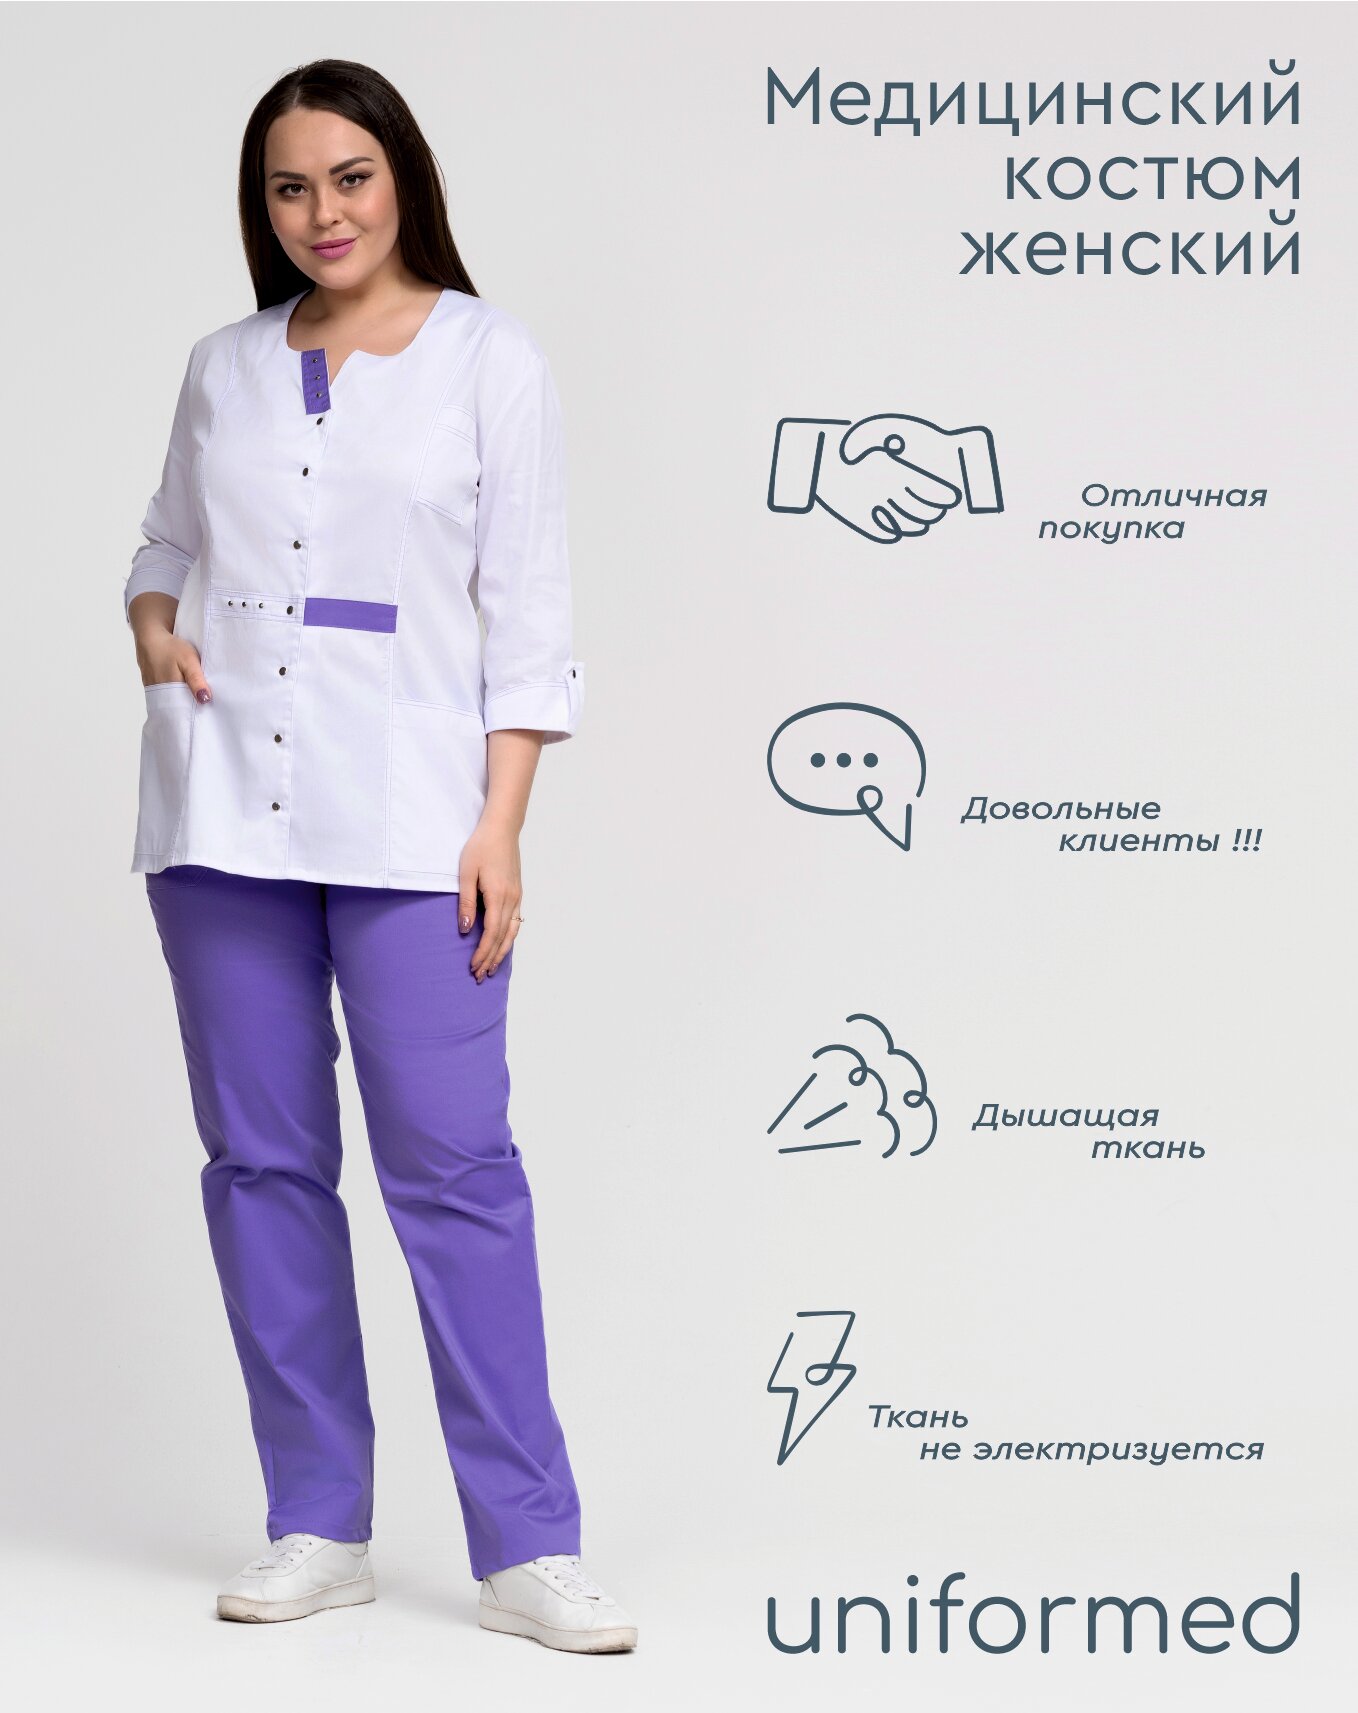 Медицинский женский костюм 352.4.3 Uniformed, ткань сатори стрейч, рукав 3/4, на кнопках, цвет белый и сиреневый, отделка сиреневая, рост 170-176, размер 54